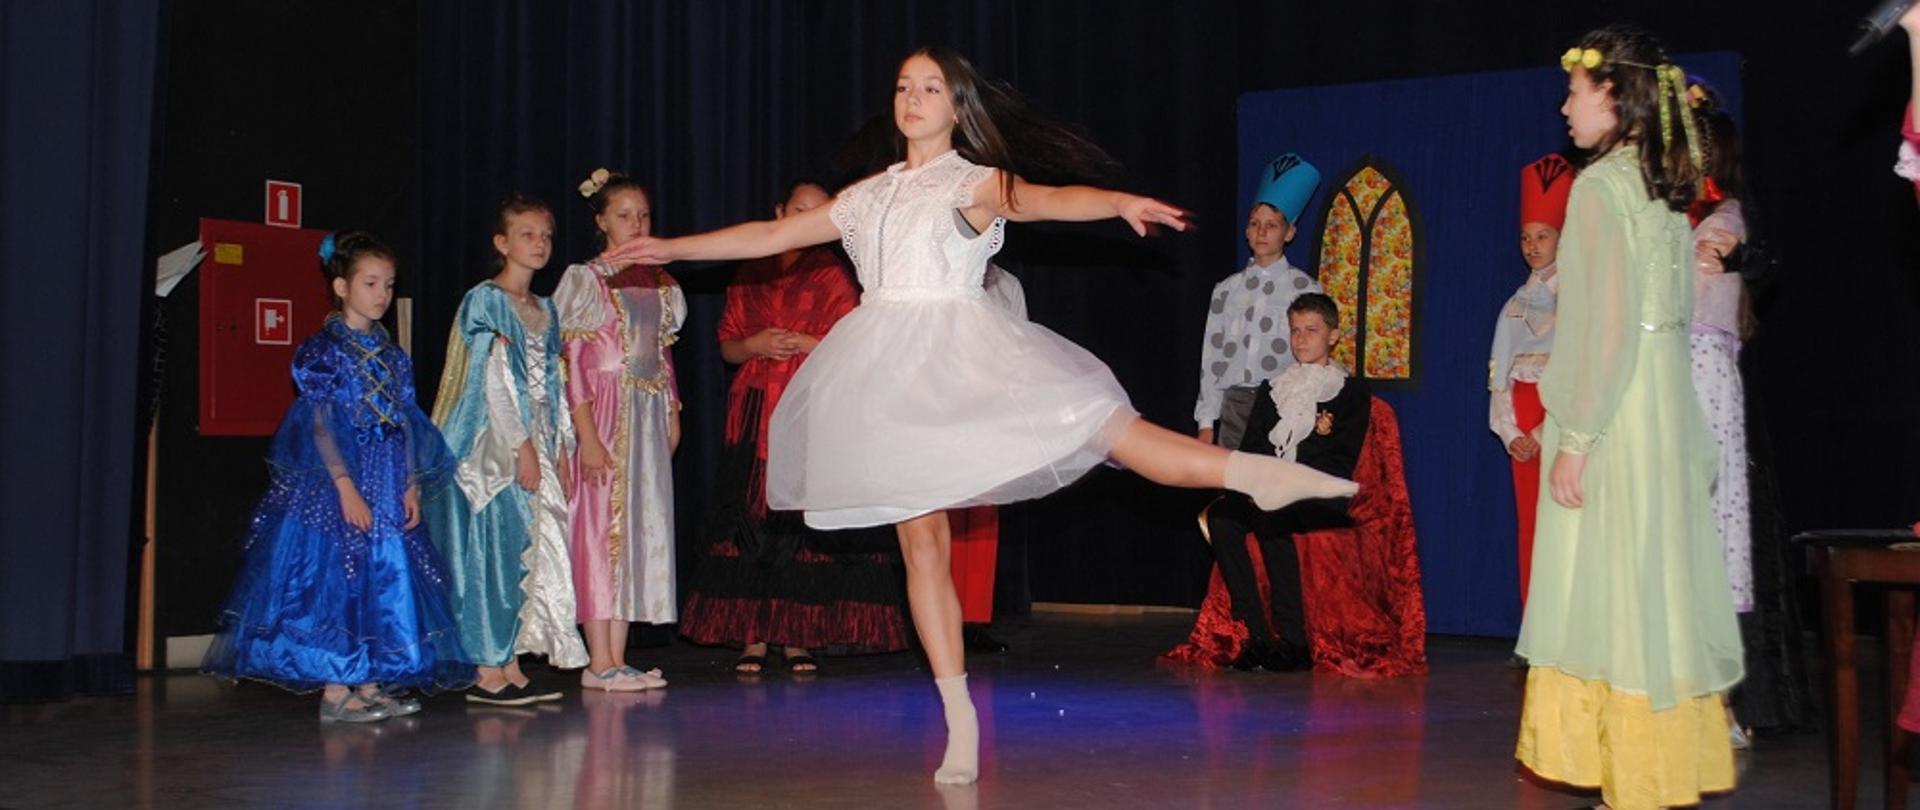 Dziewczynka ubrana w białą sukienkę tańczy na scenie, w tle inne dzieci kolorowo ubrane stoją i się przyglądają 